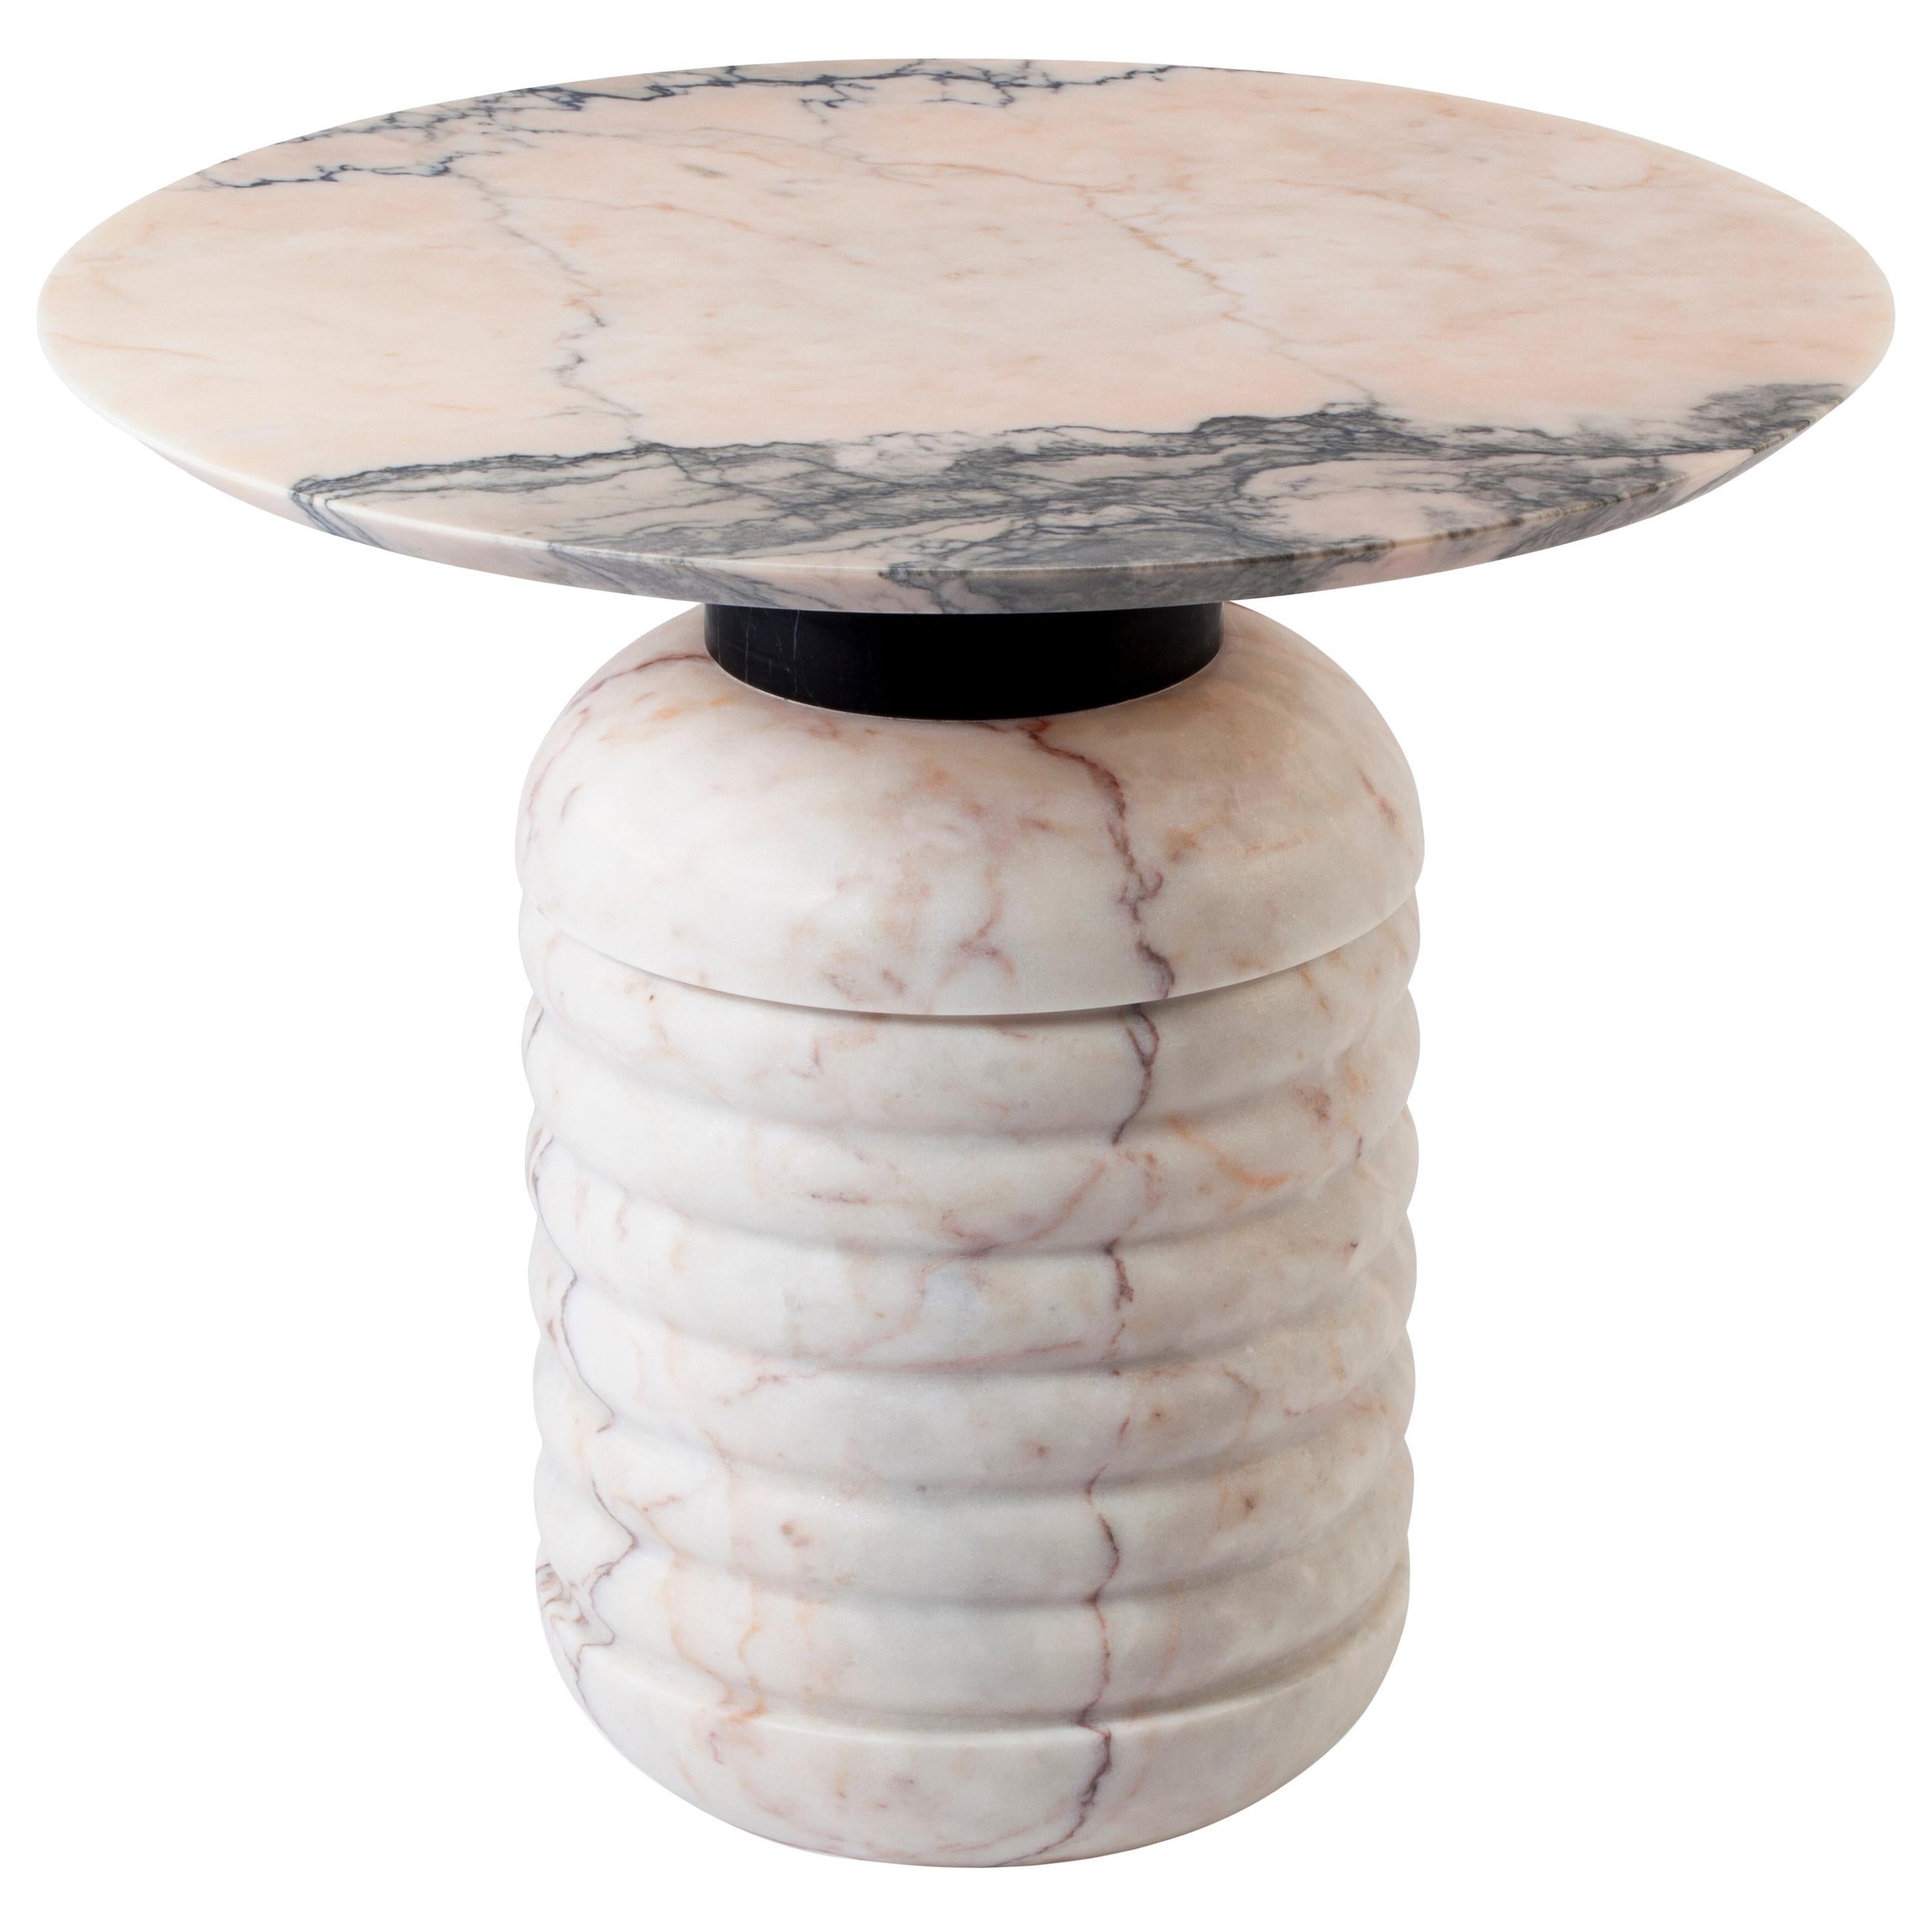 Les tables d'appoint Jean sont uniques dans leur conception. La combinaison de trois marbres différents en fait un signe de non-conformité et d'originalité. La combinaison présentée sur la photo est en marbre blanc Estremoz, marbre rose Estremoz et